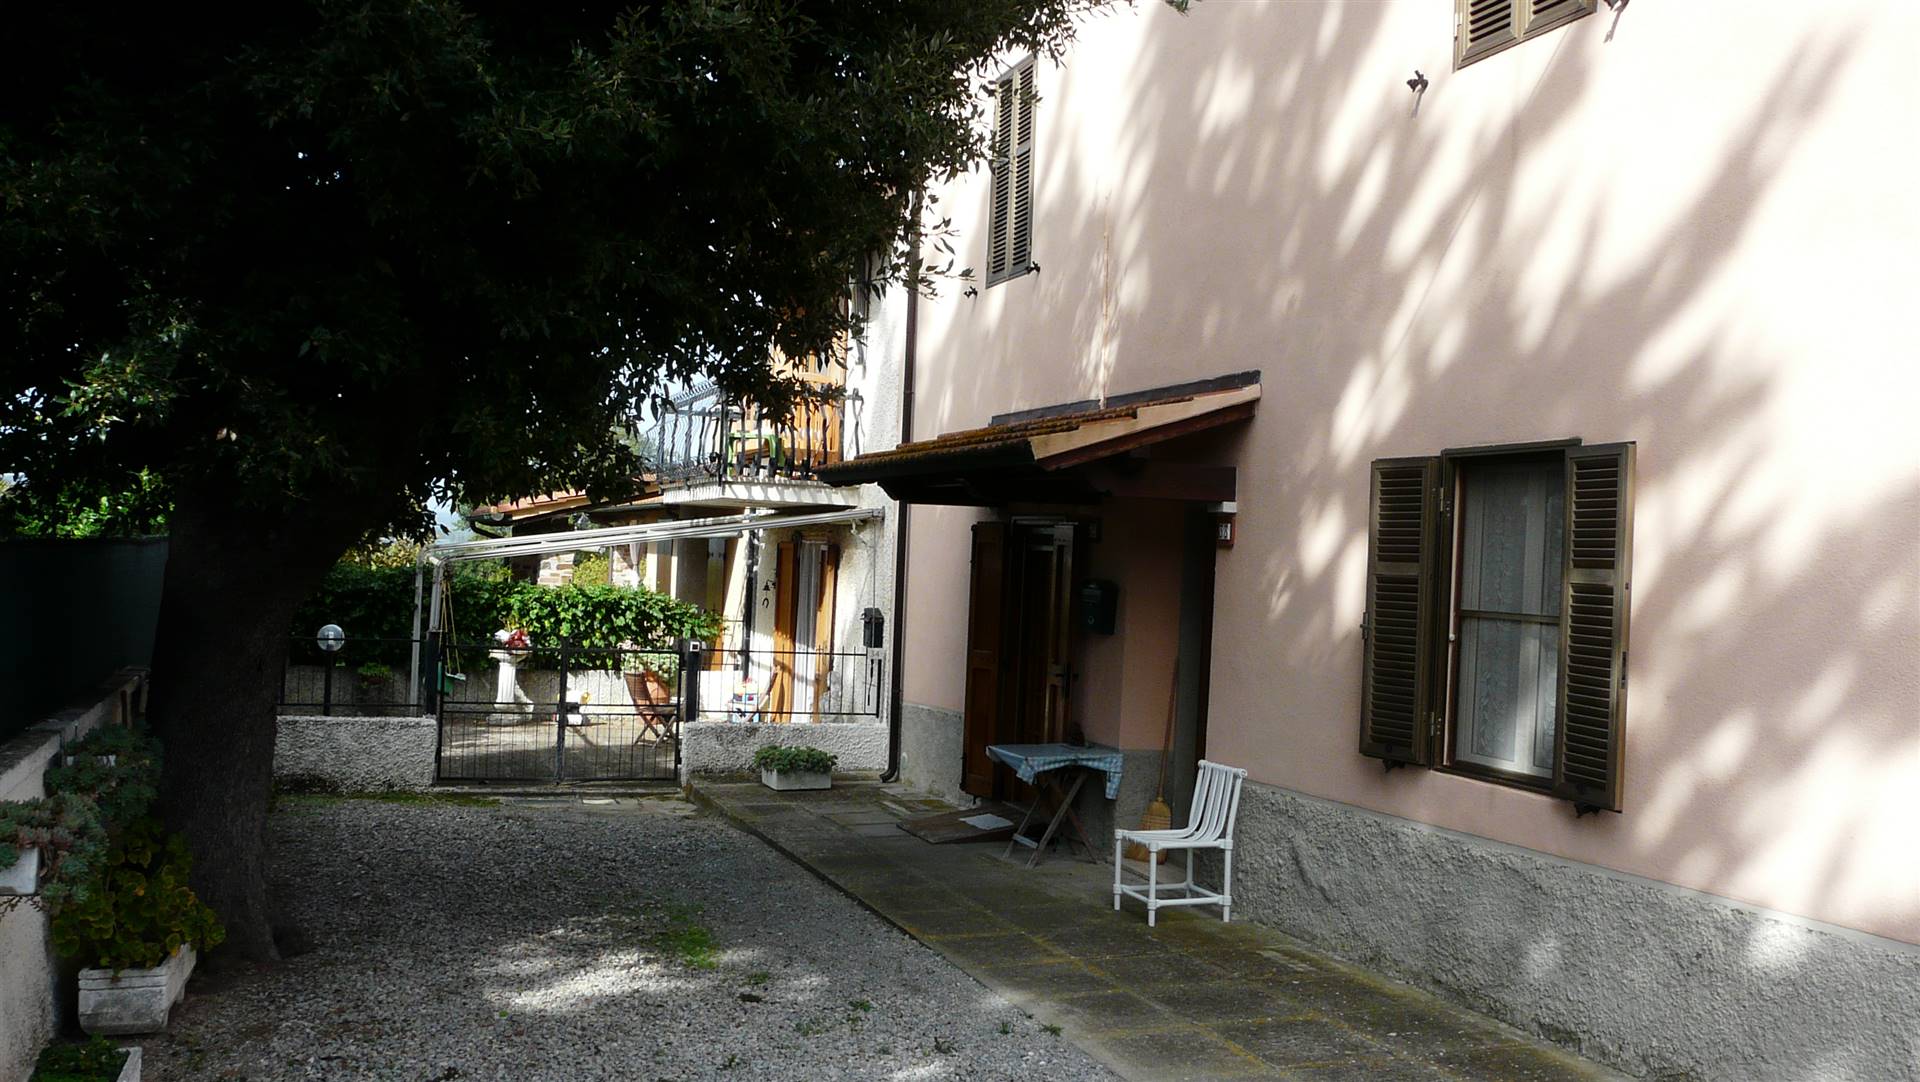 Rustico / Casale in vendita a Scarlino, 5 locali, prezzo € 300.000 | CambioCasa.it